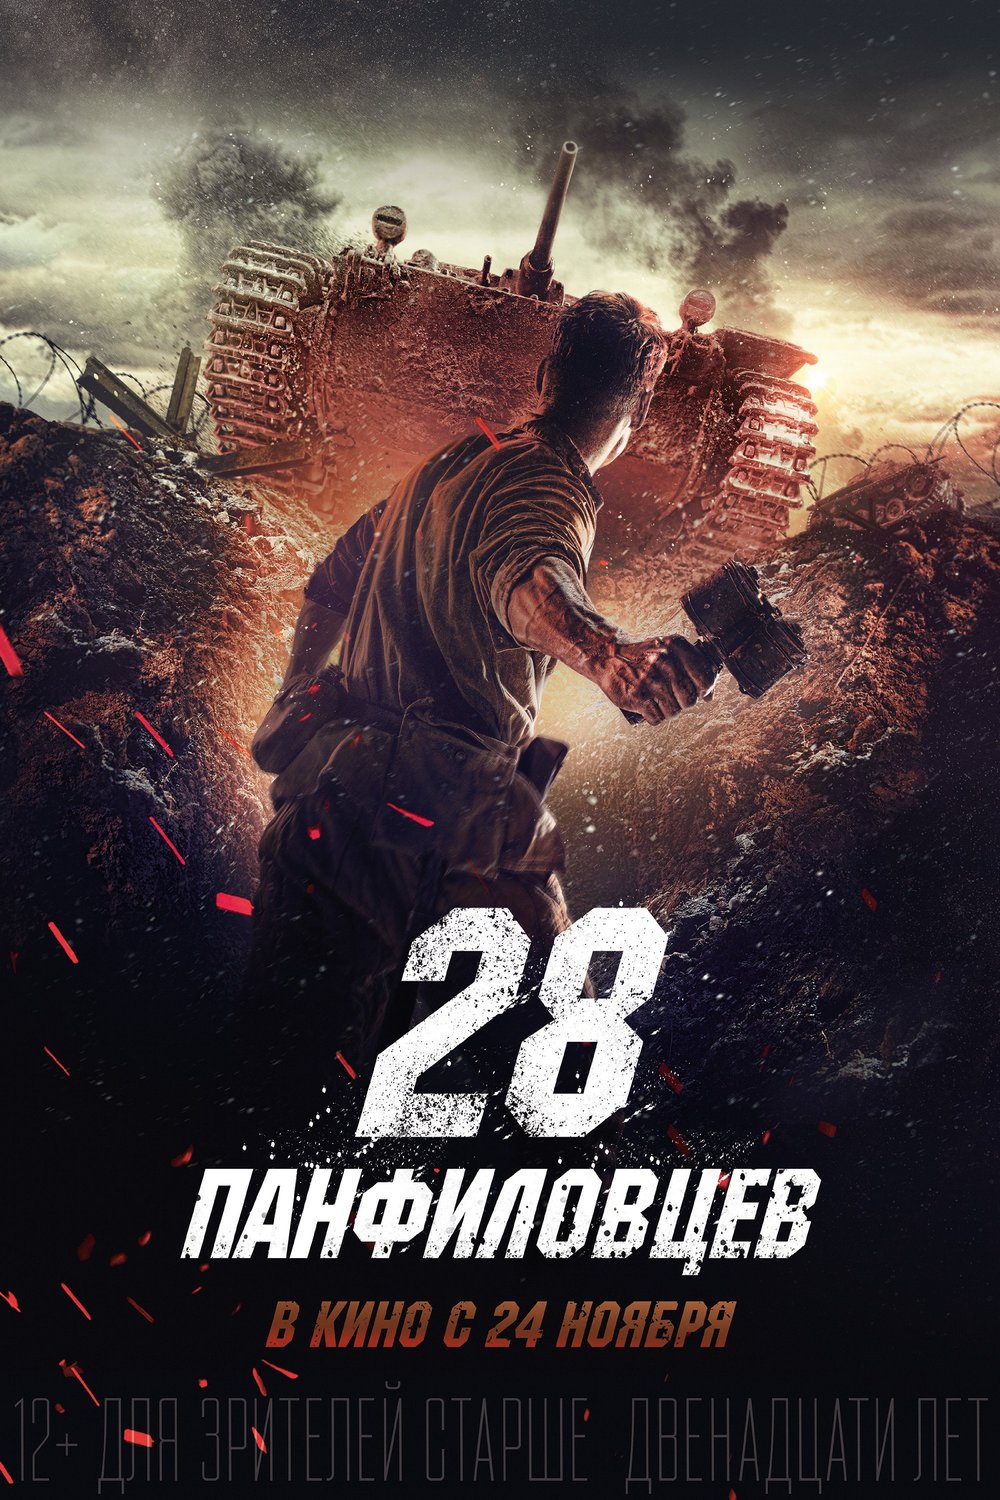 Russian poster of the movie Dvadtsat vosem panfilovtsev